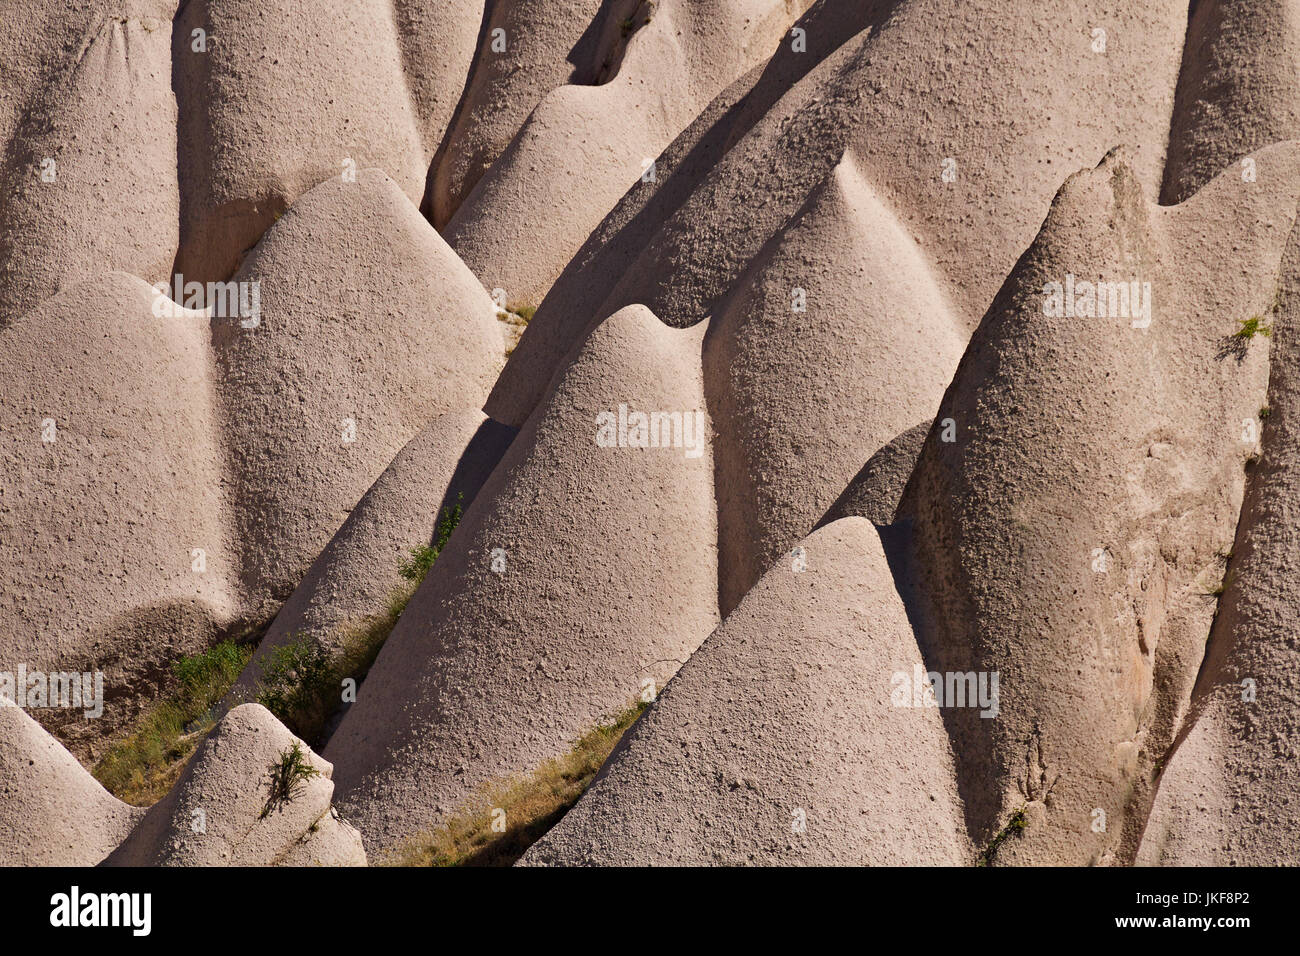 Formations de roche volcanique connu sous le nom de cheminées de fées et terrain extrême de la Cappadoce, Turquie. Banque D'Images